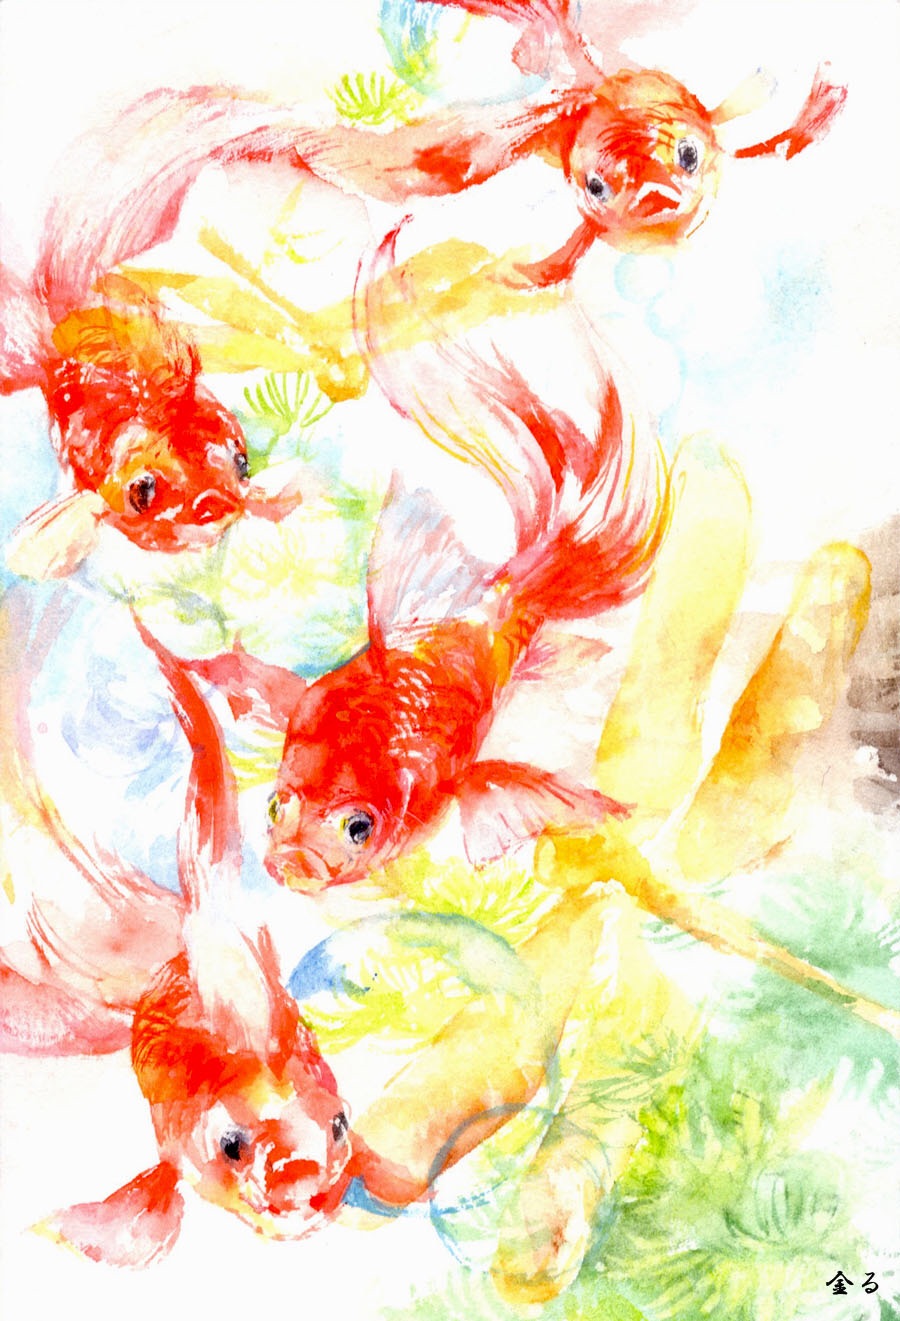 金魚 アート インテリア絵画の通販 販売サイト Thisisgallery ディスイズギャラリー